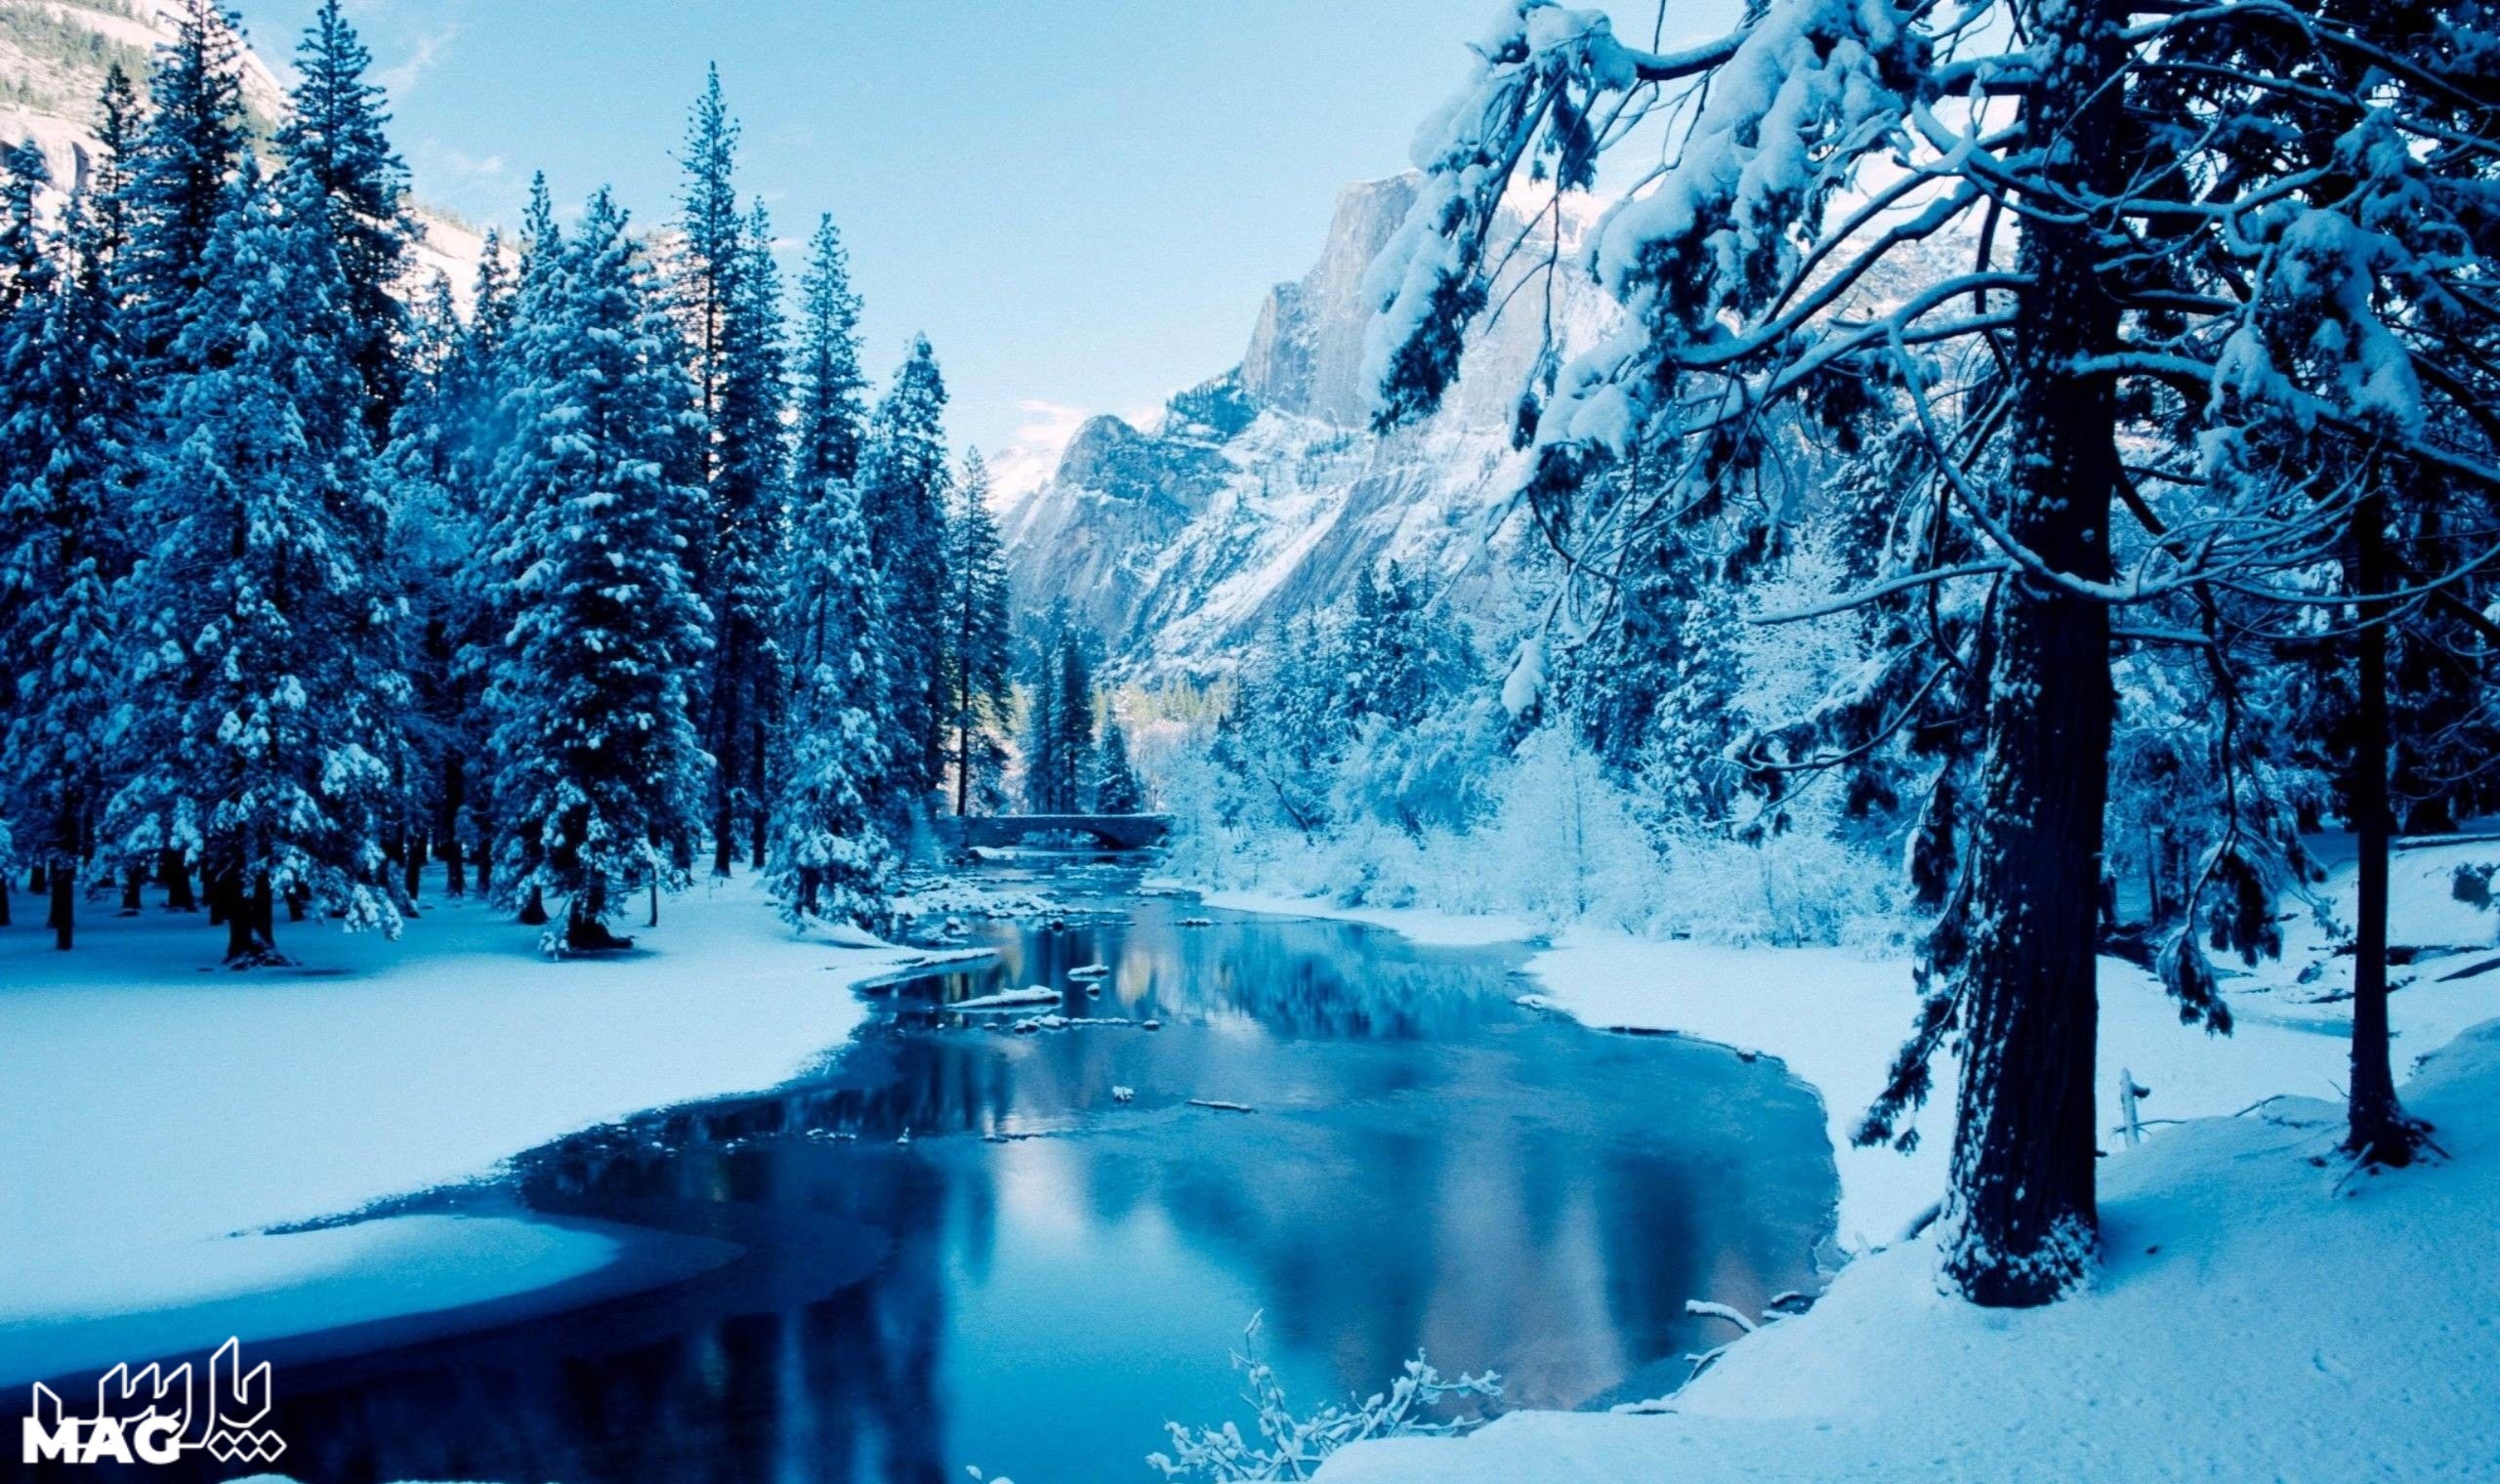 دریاچه - عکس منظره برفی با کیفیت بالا